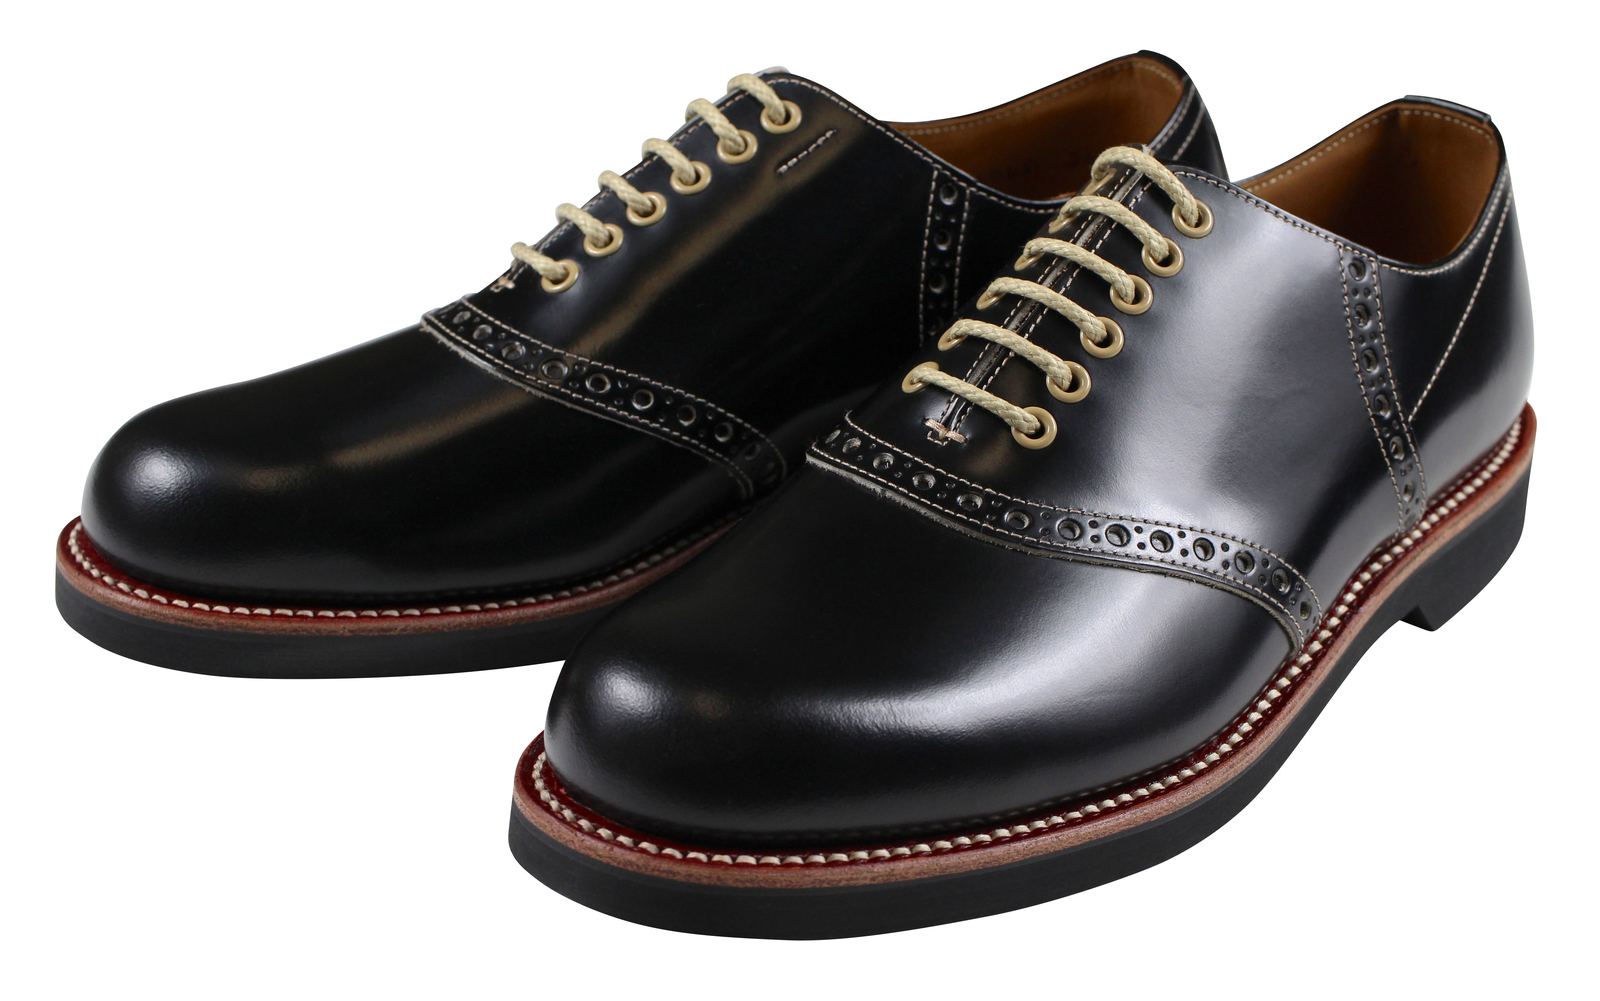 saddle shoes black new style 28b81 8f151